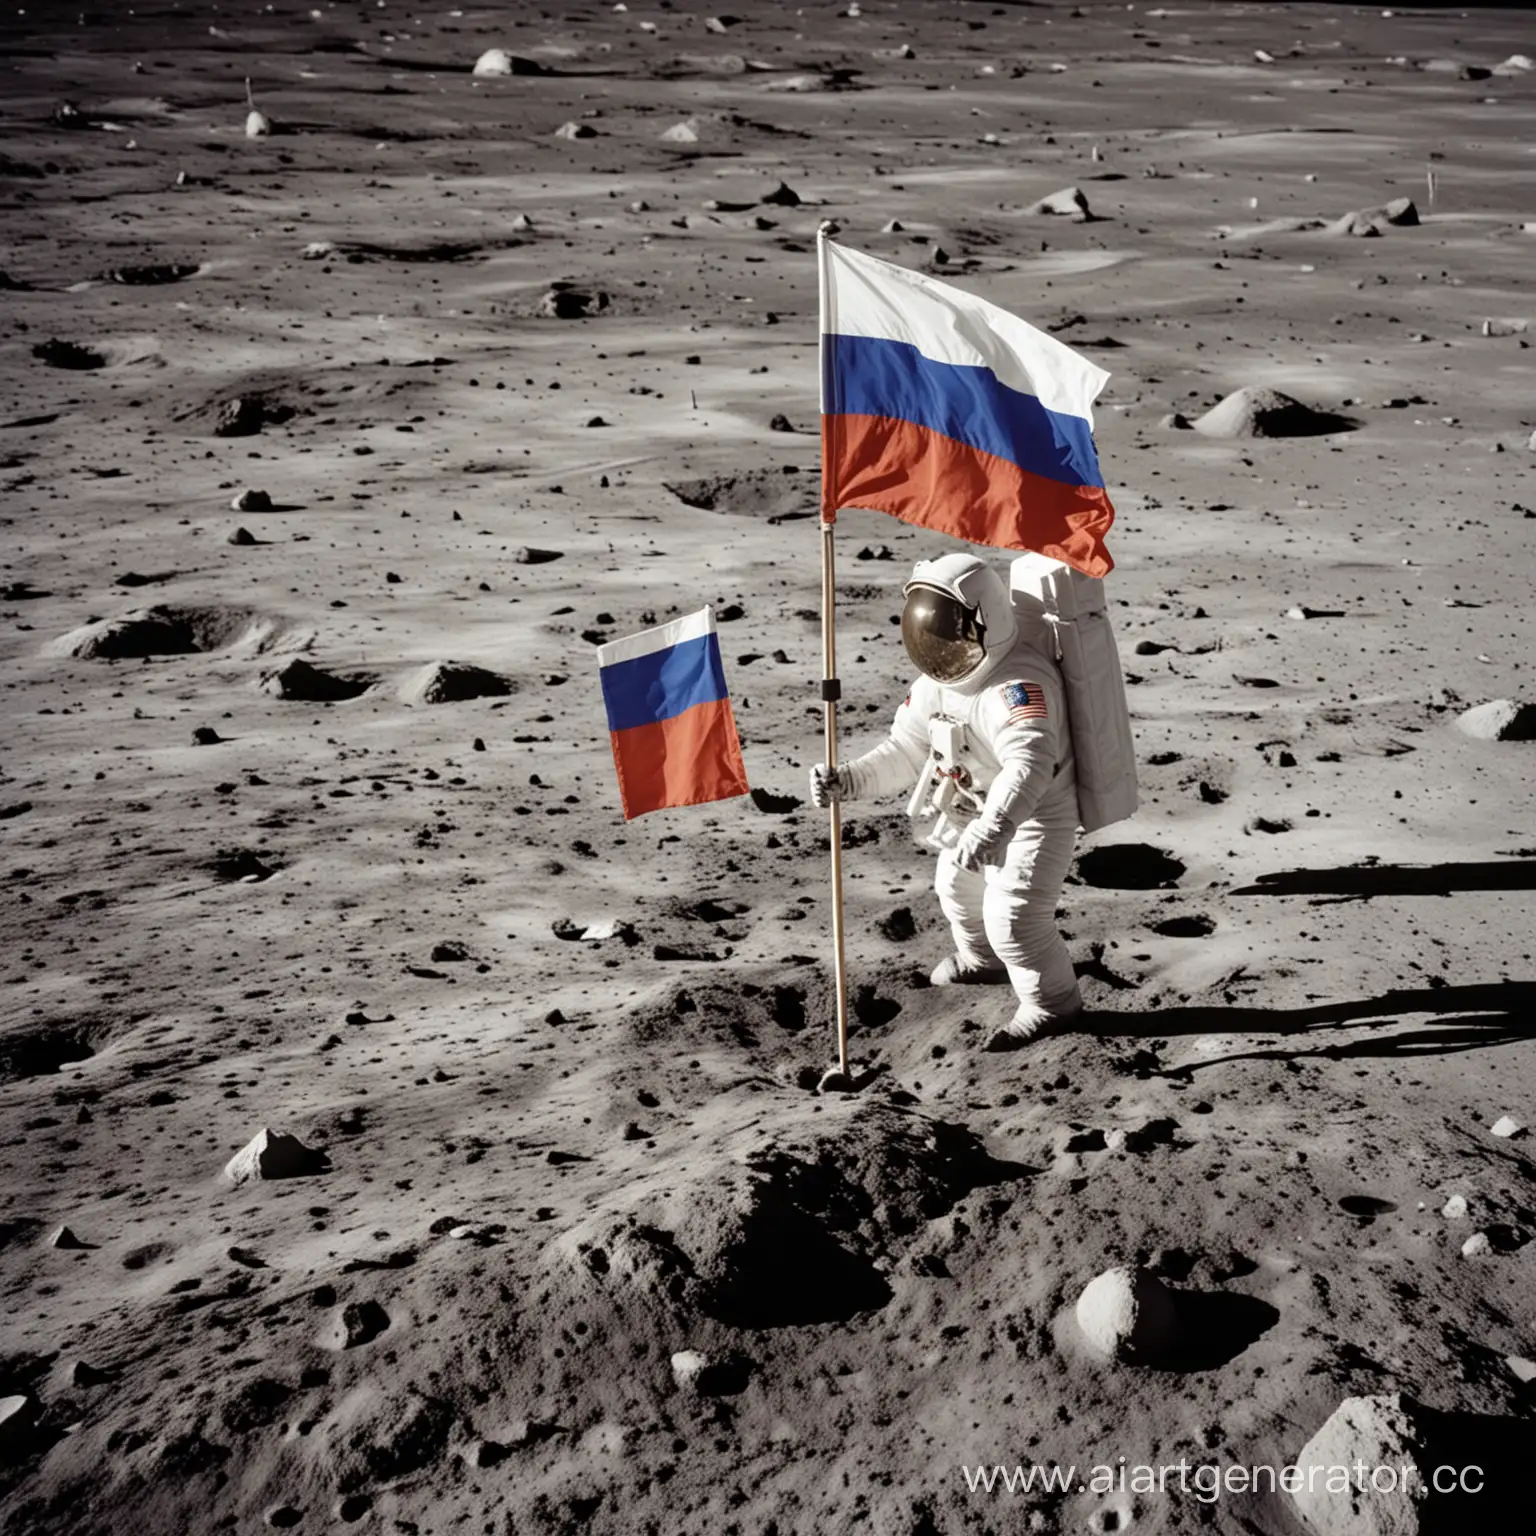 фотография астронавта, который ставит на Луну 
флаг с российским флагом на белом фоне
